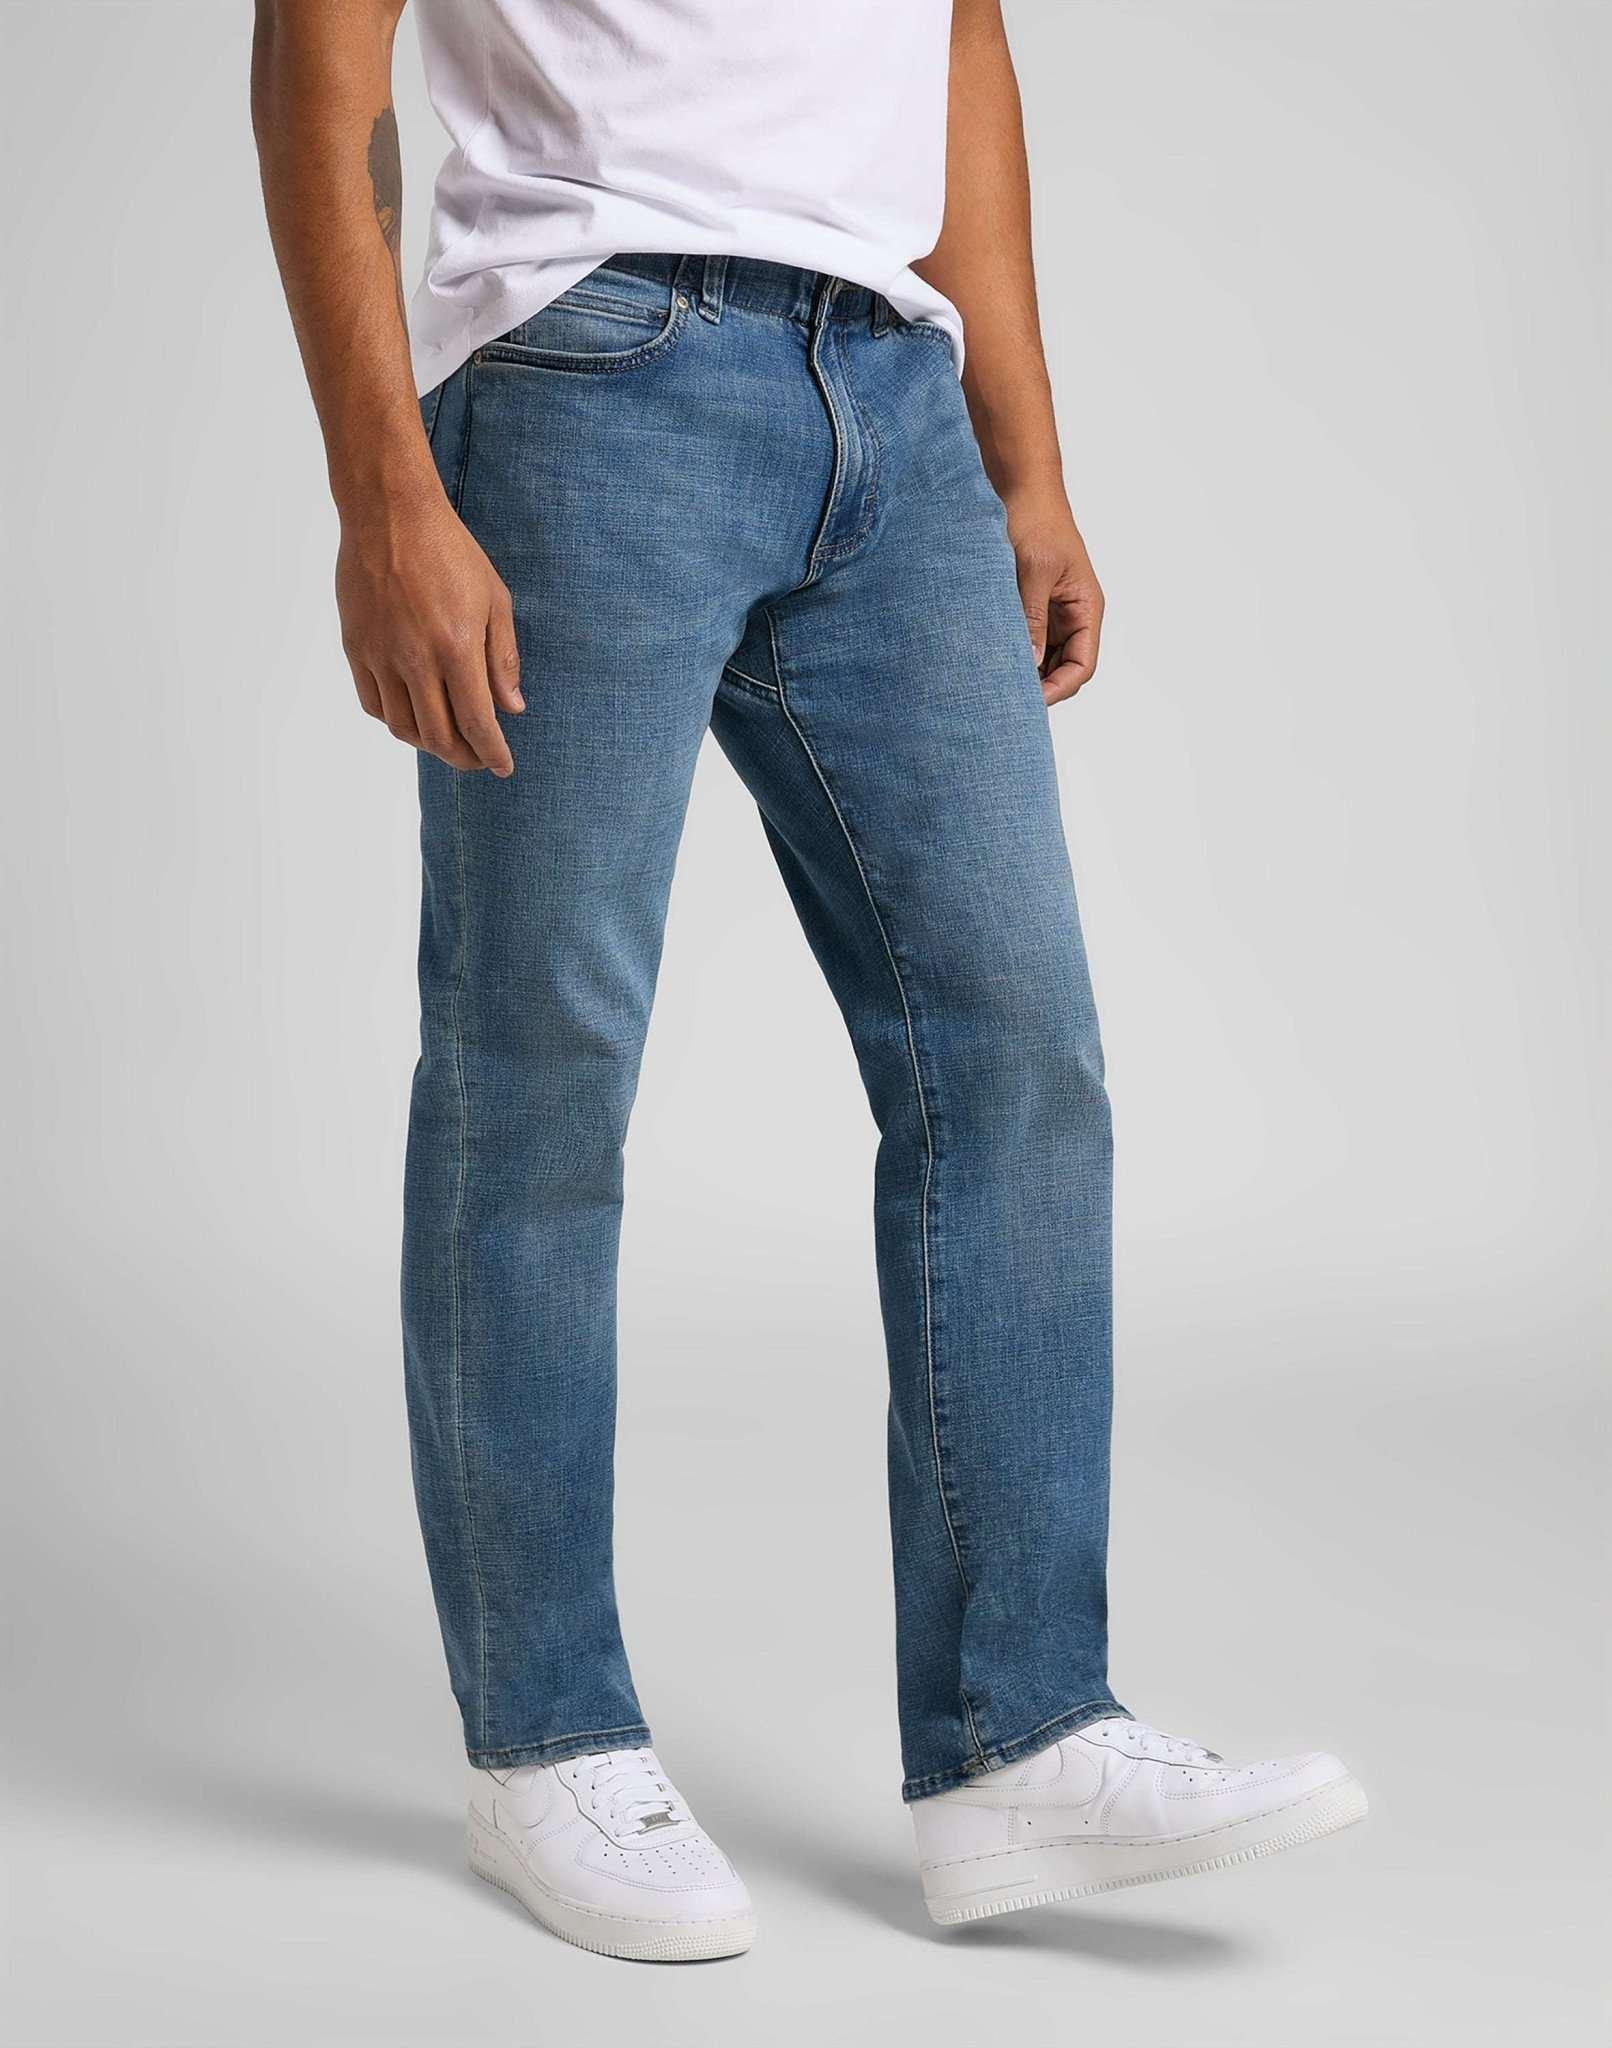 Jeans Straight Leg Mvp Herren Blau Denim L30/W30 von Lee